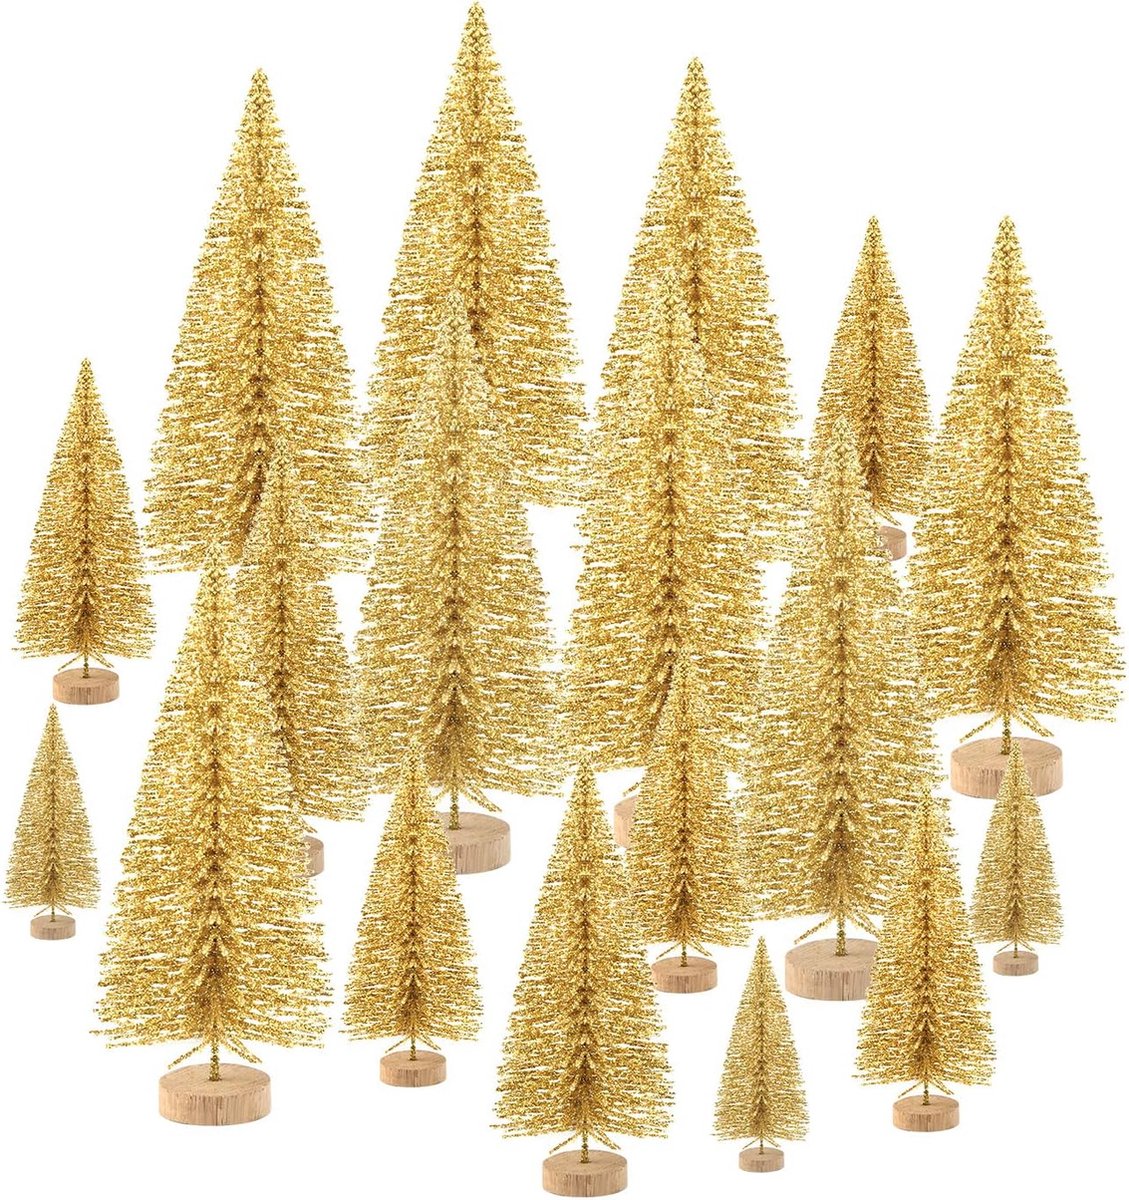 48 stuks mini kerstbomen fles borstel bomen tafelblad model bomen voor kerst decoratie doe-het-zelf kamer decor diorama modellen (goud) kleine maten bomen